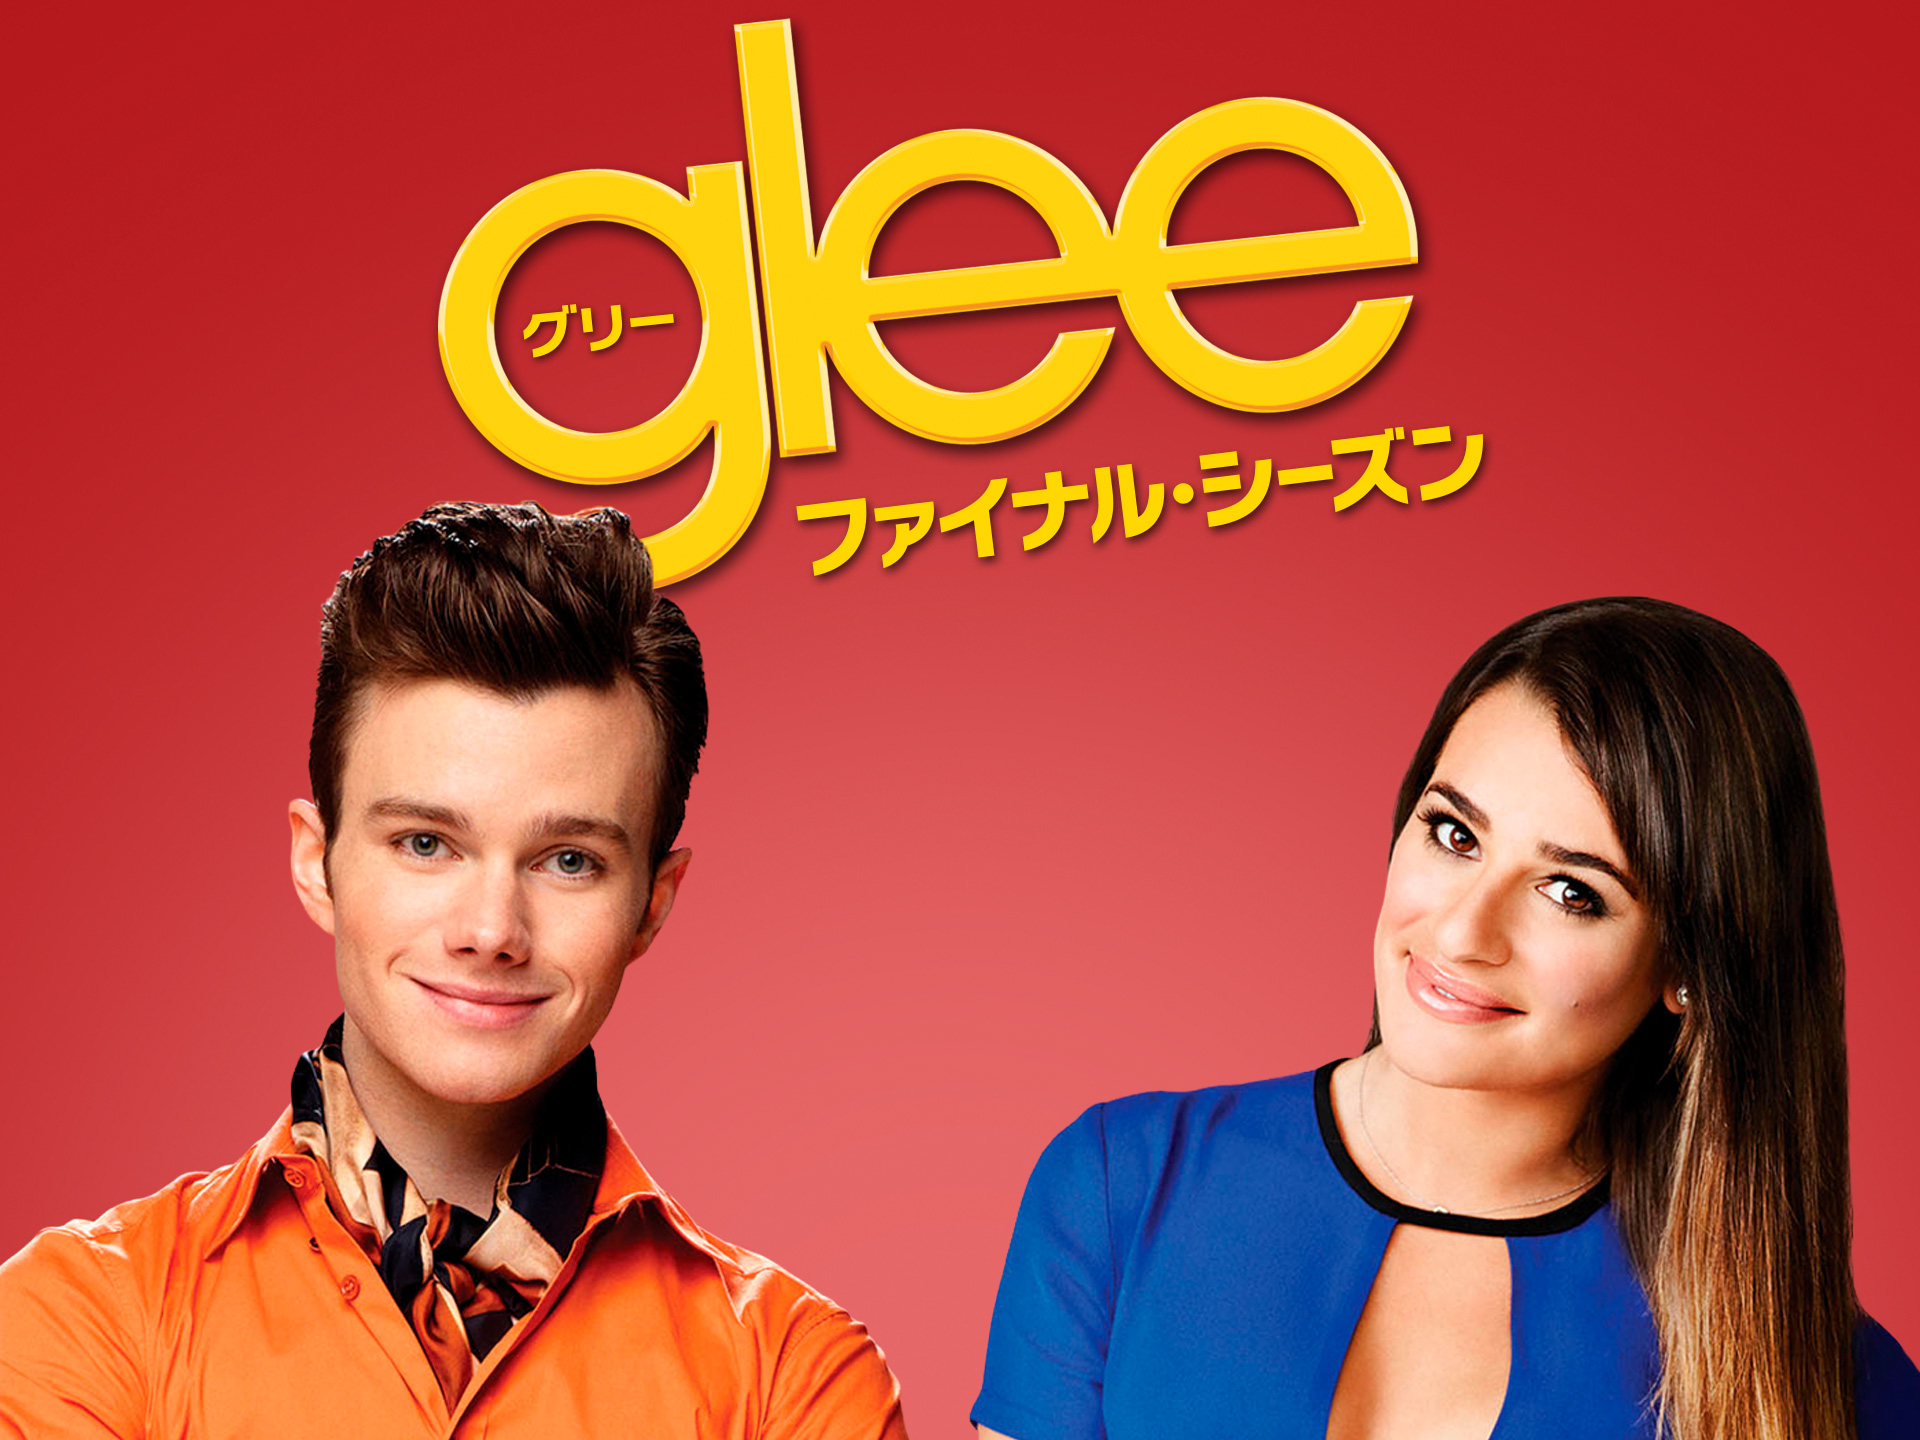 ドラマ Glee グリー ファイナル シーズン の動画まとめ 初月無料 動画配信サービスのビデオマーケット